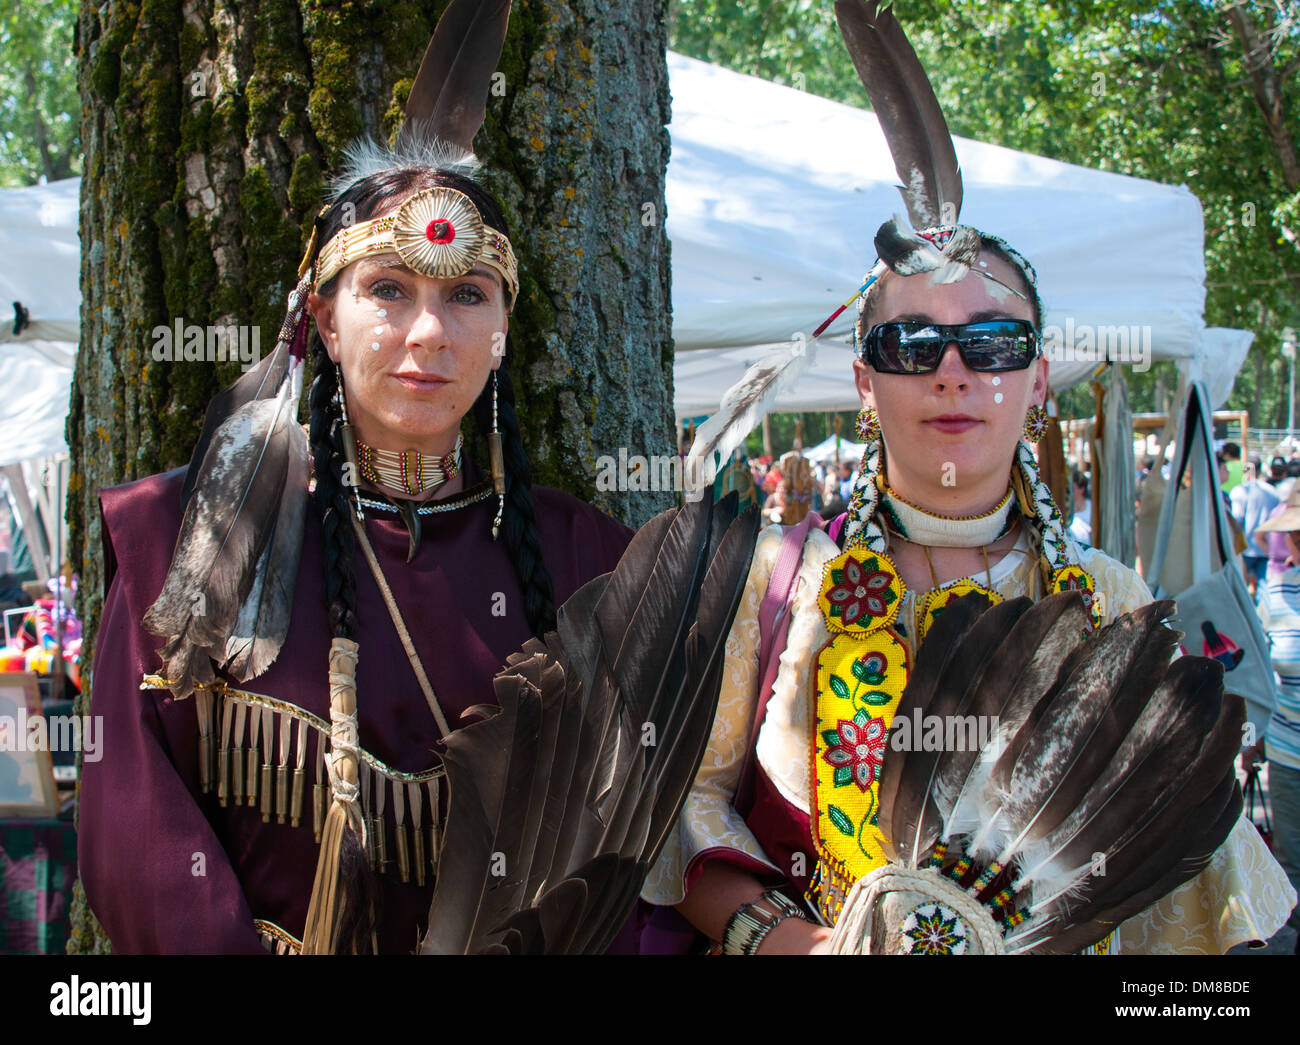 La nazione Mohawk di Kahnawake comunità native sulla riva sud del San Lorenzo in Québec Canada celebra Pow Wow Foto Stock